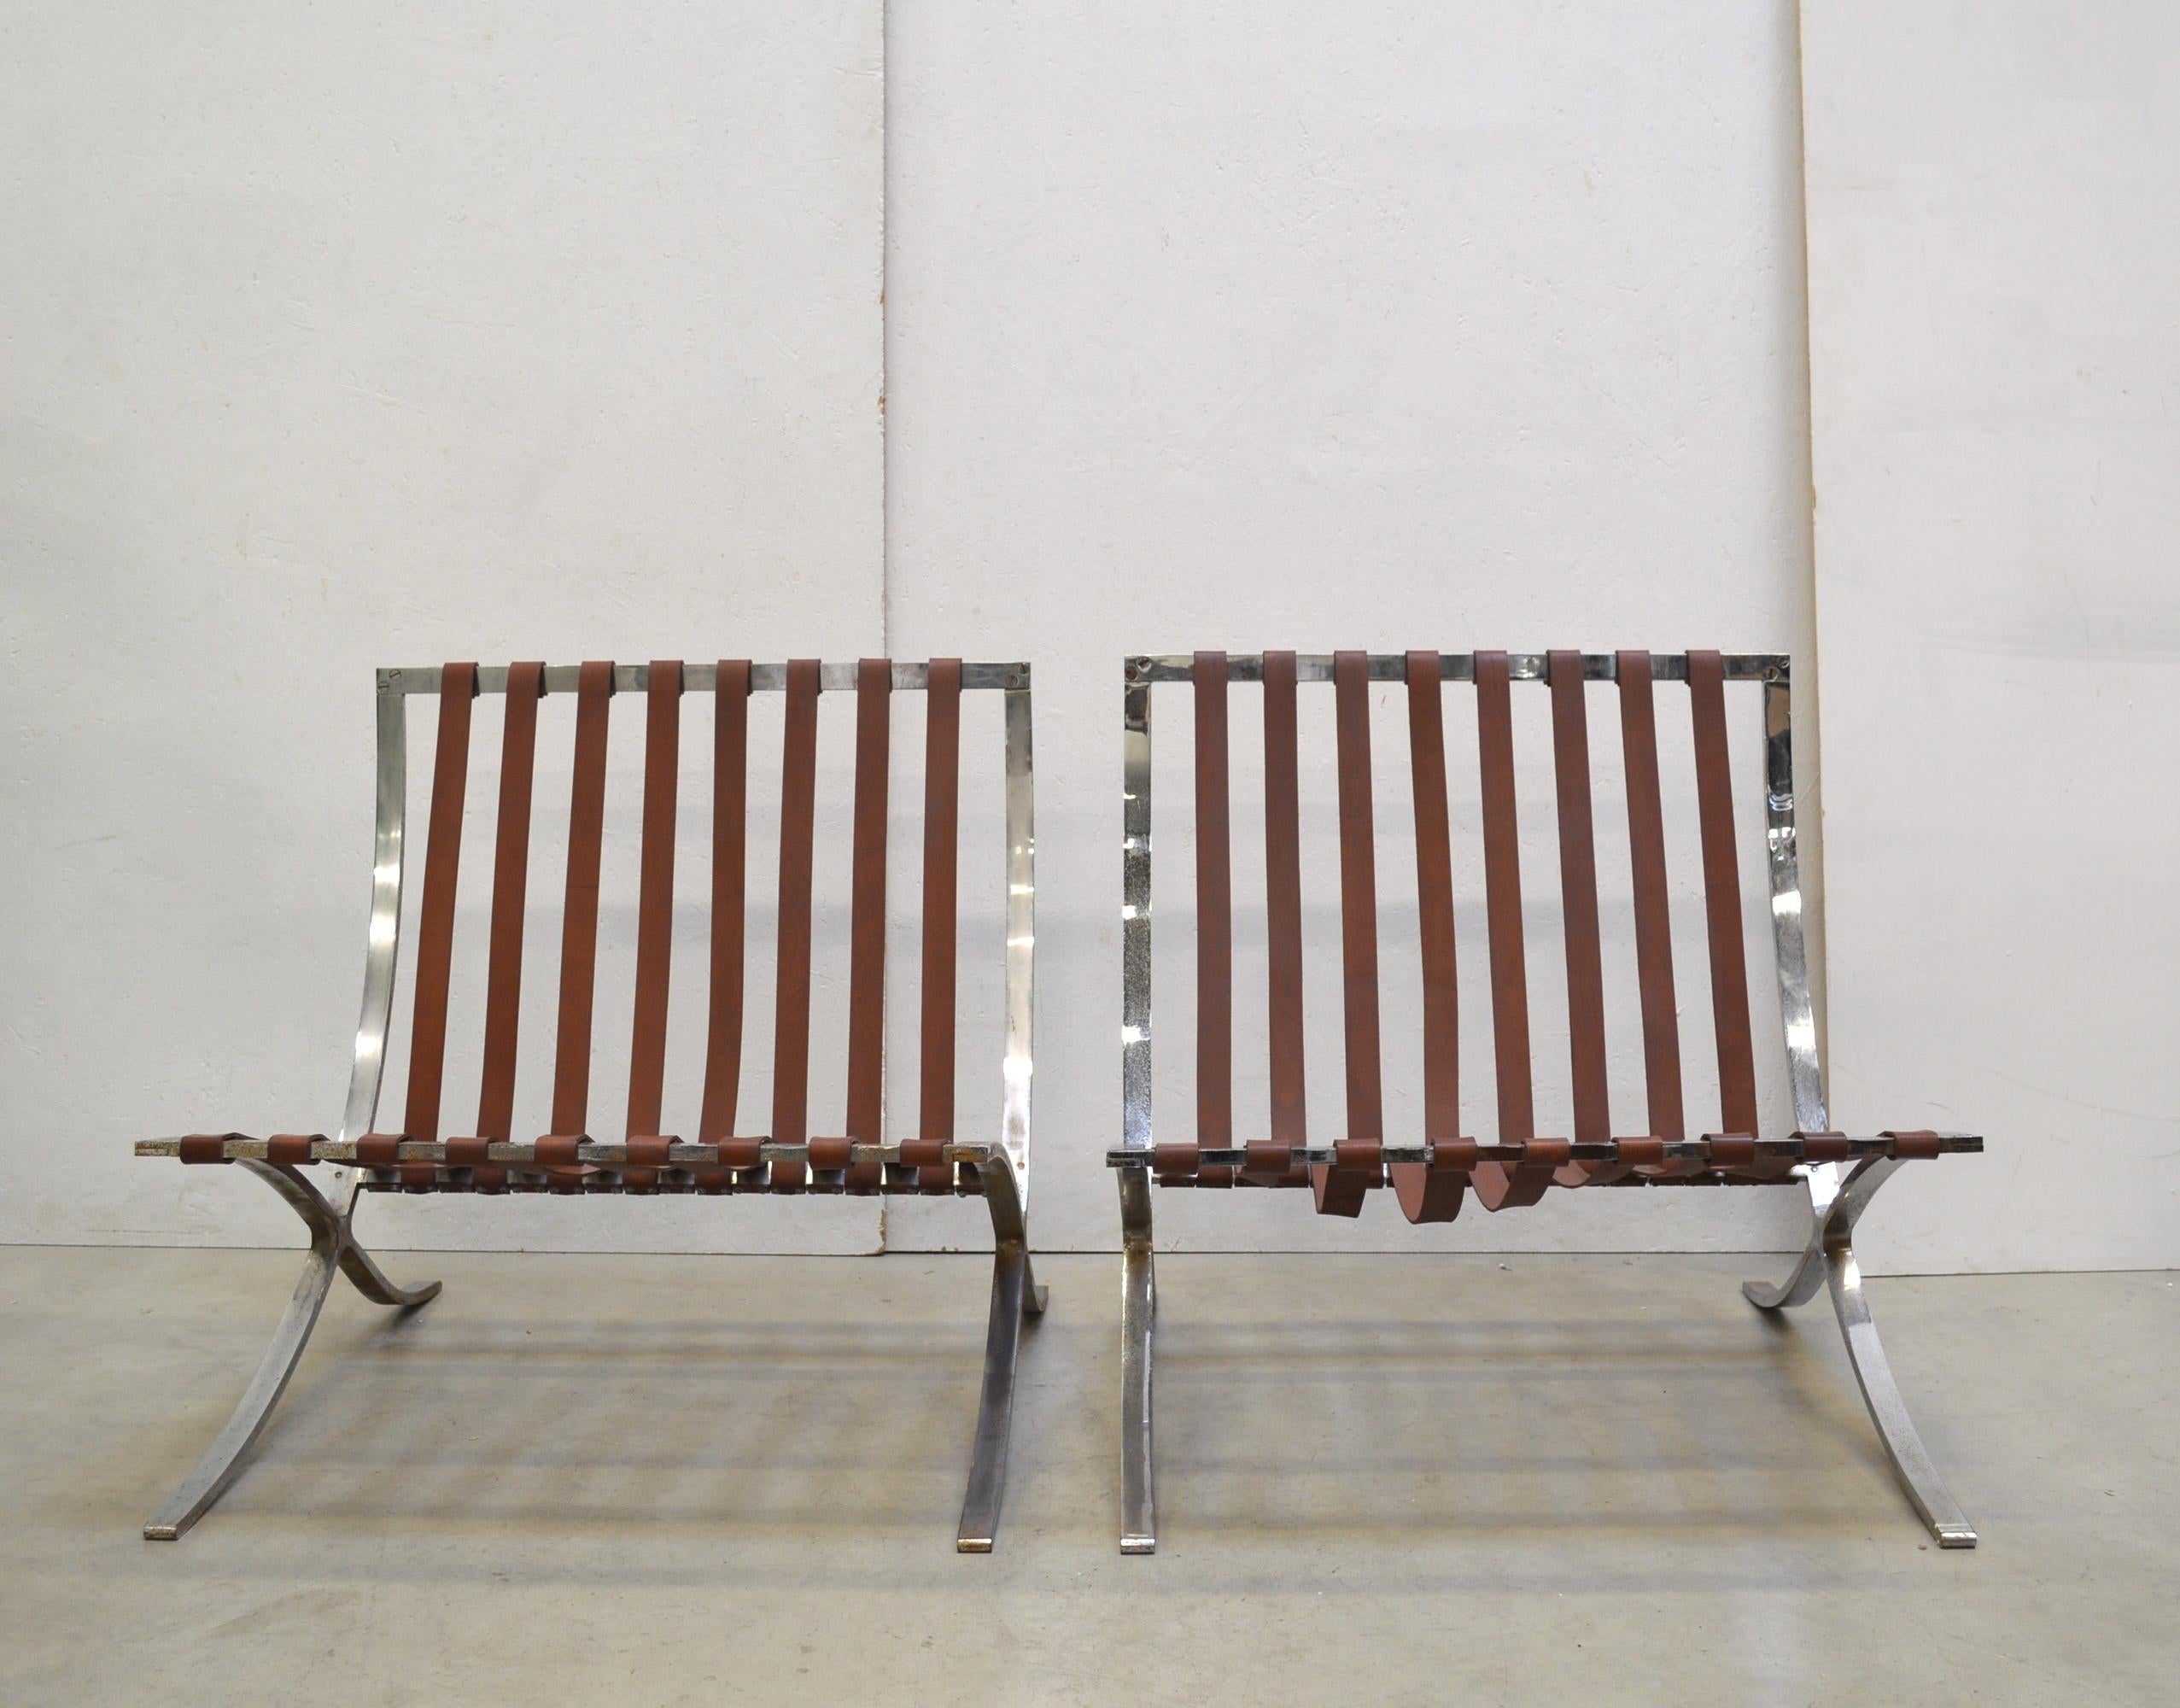 Ces rares chaises de Barcelone ont été conçues par Mies van der Rohe en 1929 pour le célèbre pavillon de Barcelone et produites par Stiegler dans les années 1950. 

Stiegler est une petite entreprise qui a fabriqué les cadres pour Knoll